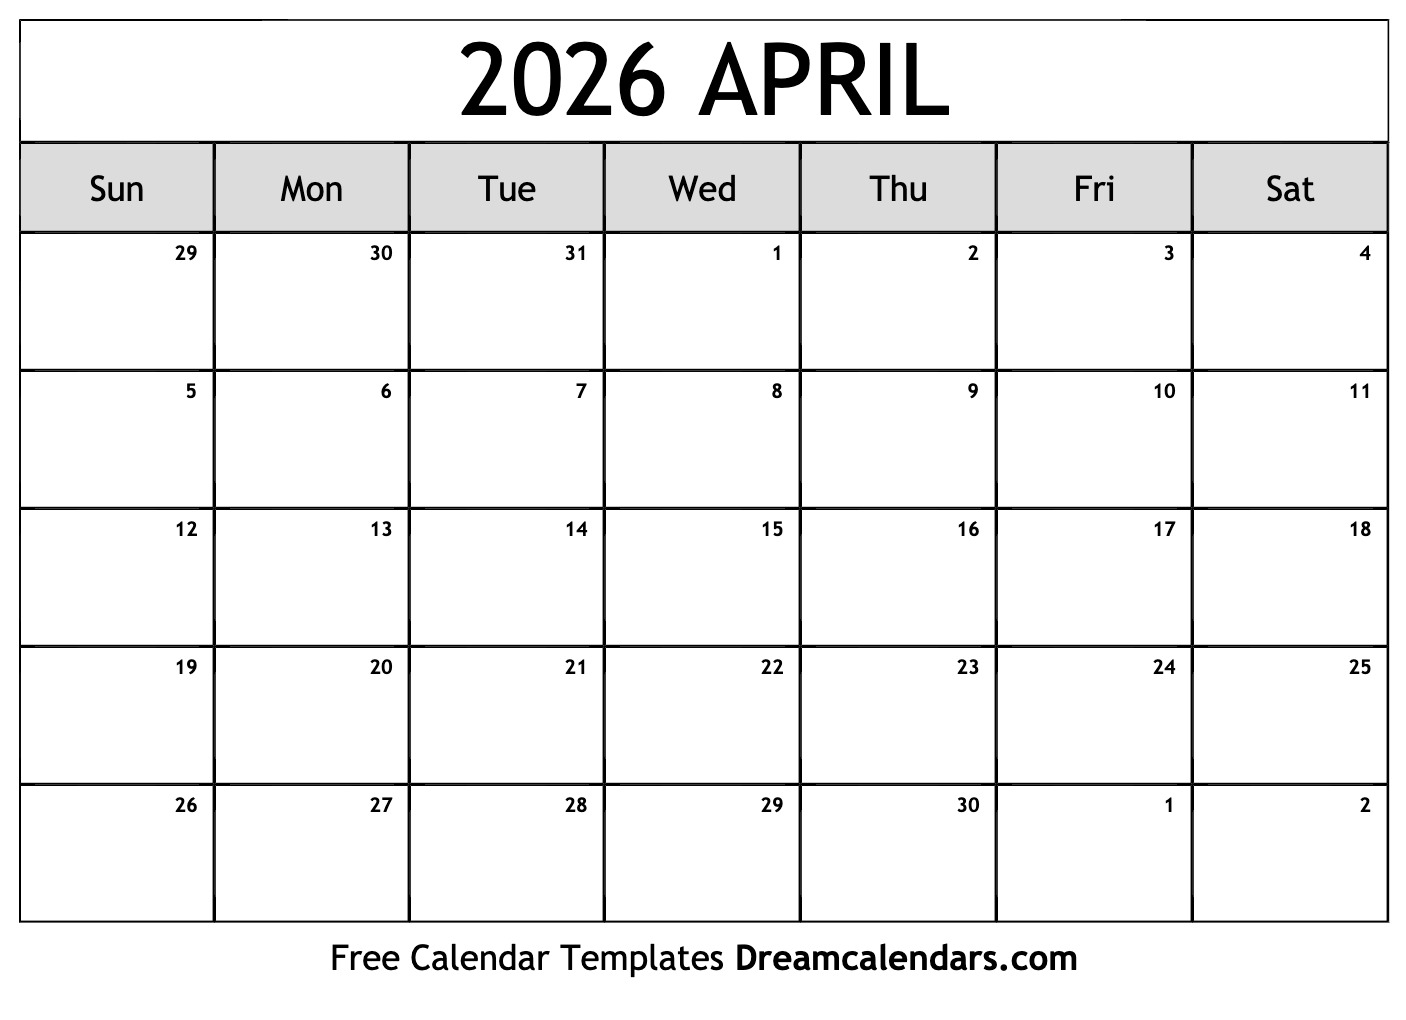 April 2026 Monthly Calendar Bank2home com